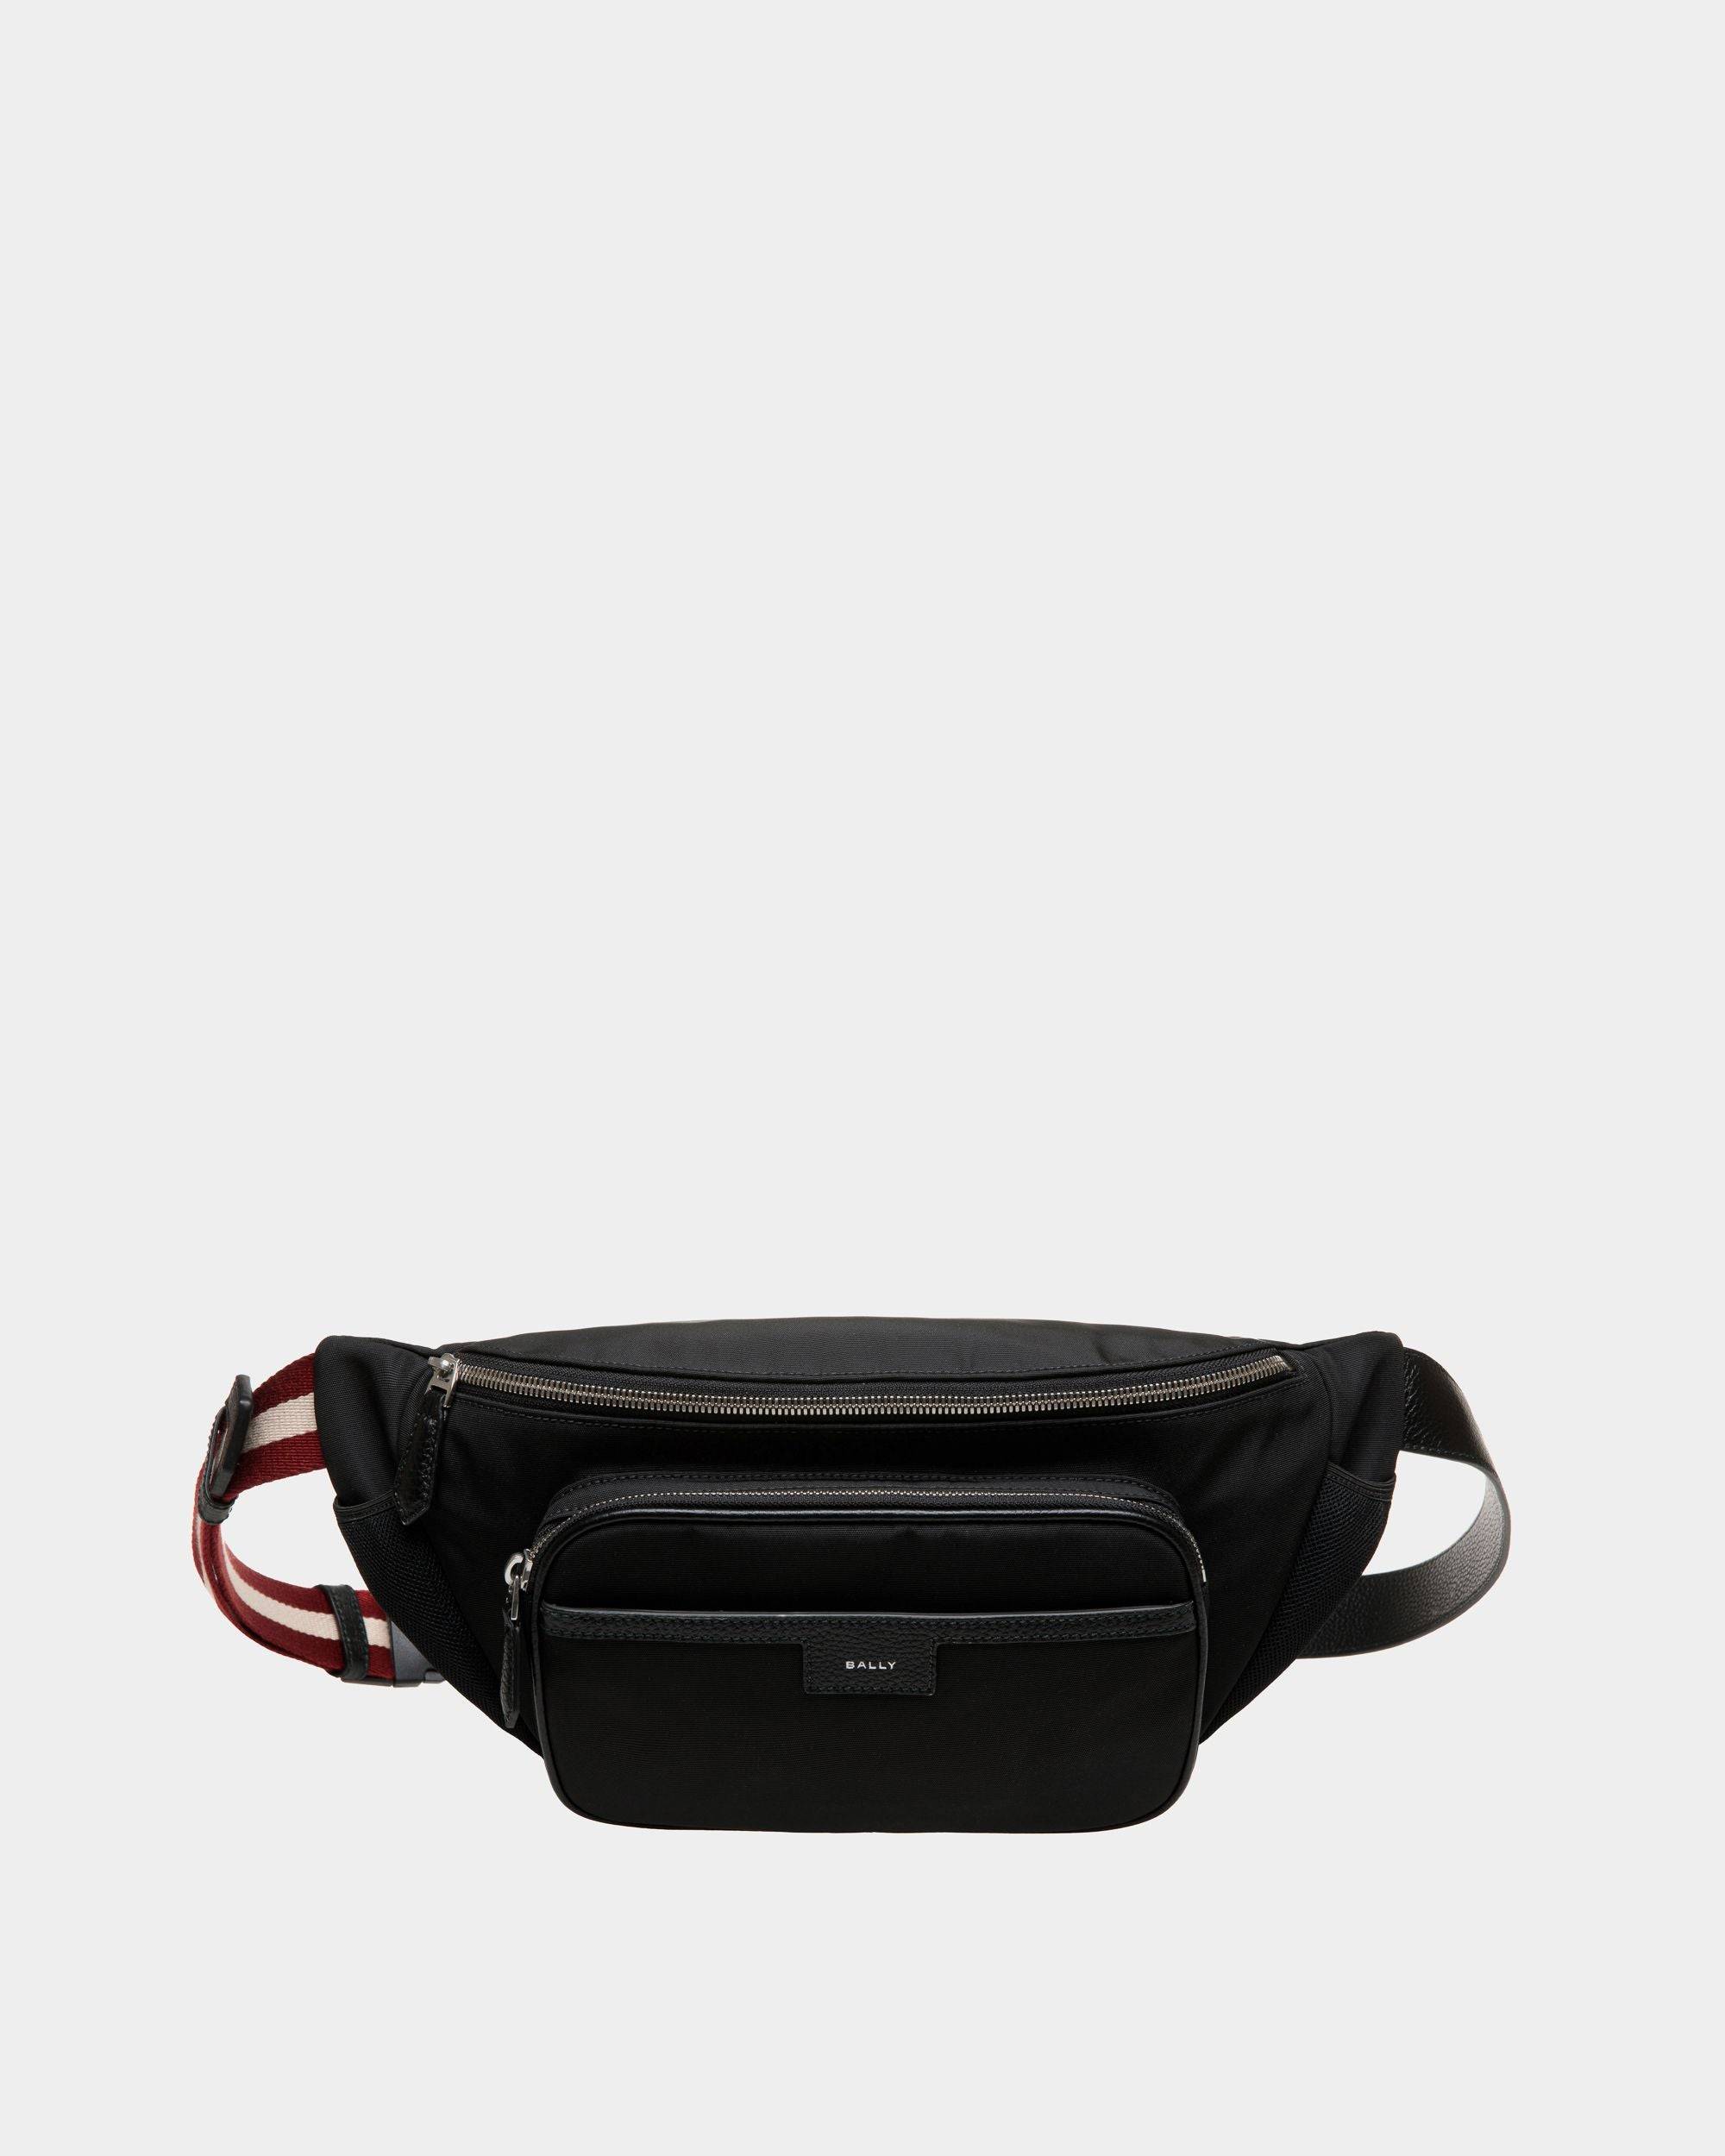 Code | Men's Belt Bag in Black Nylon | Bally | Still Life Front